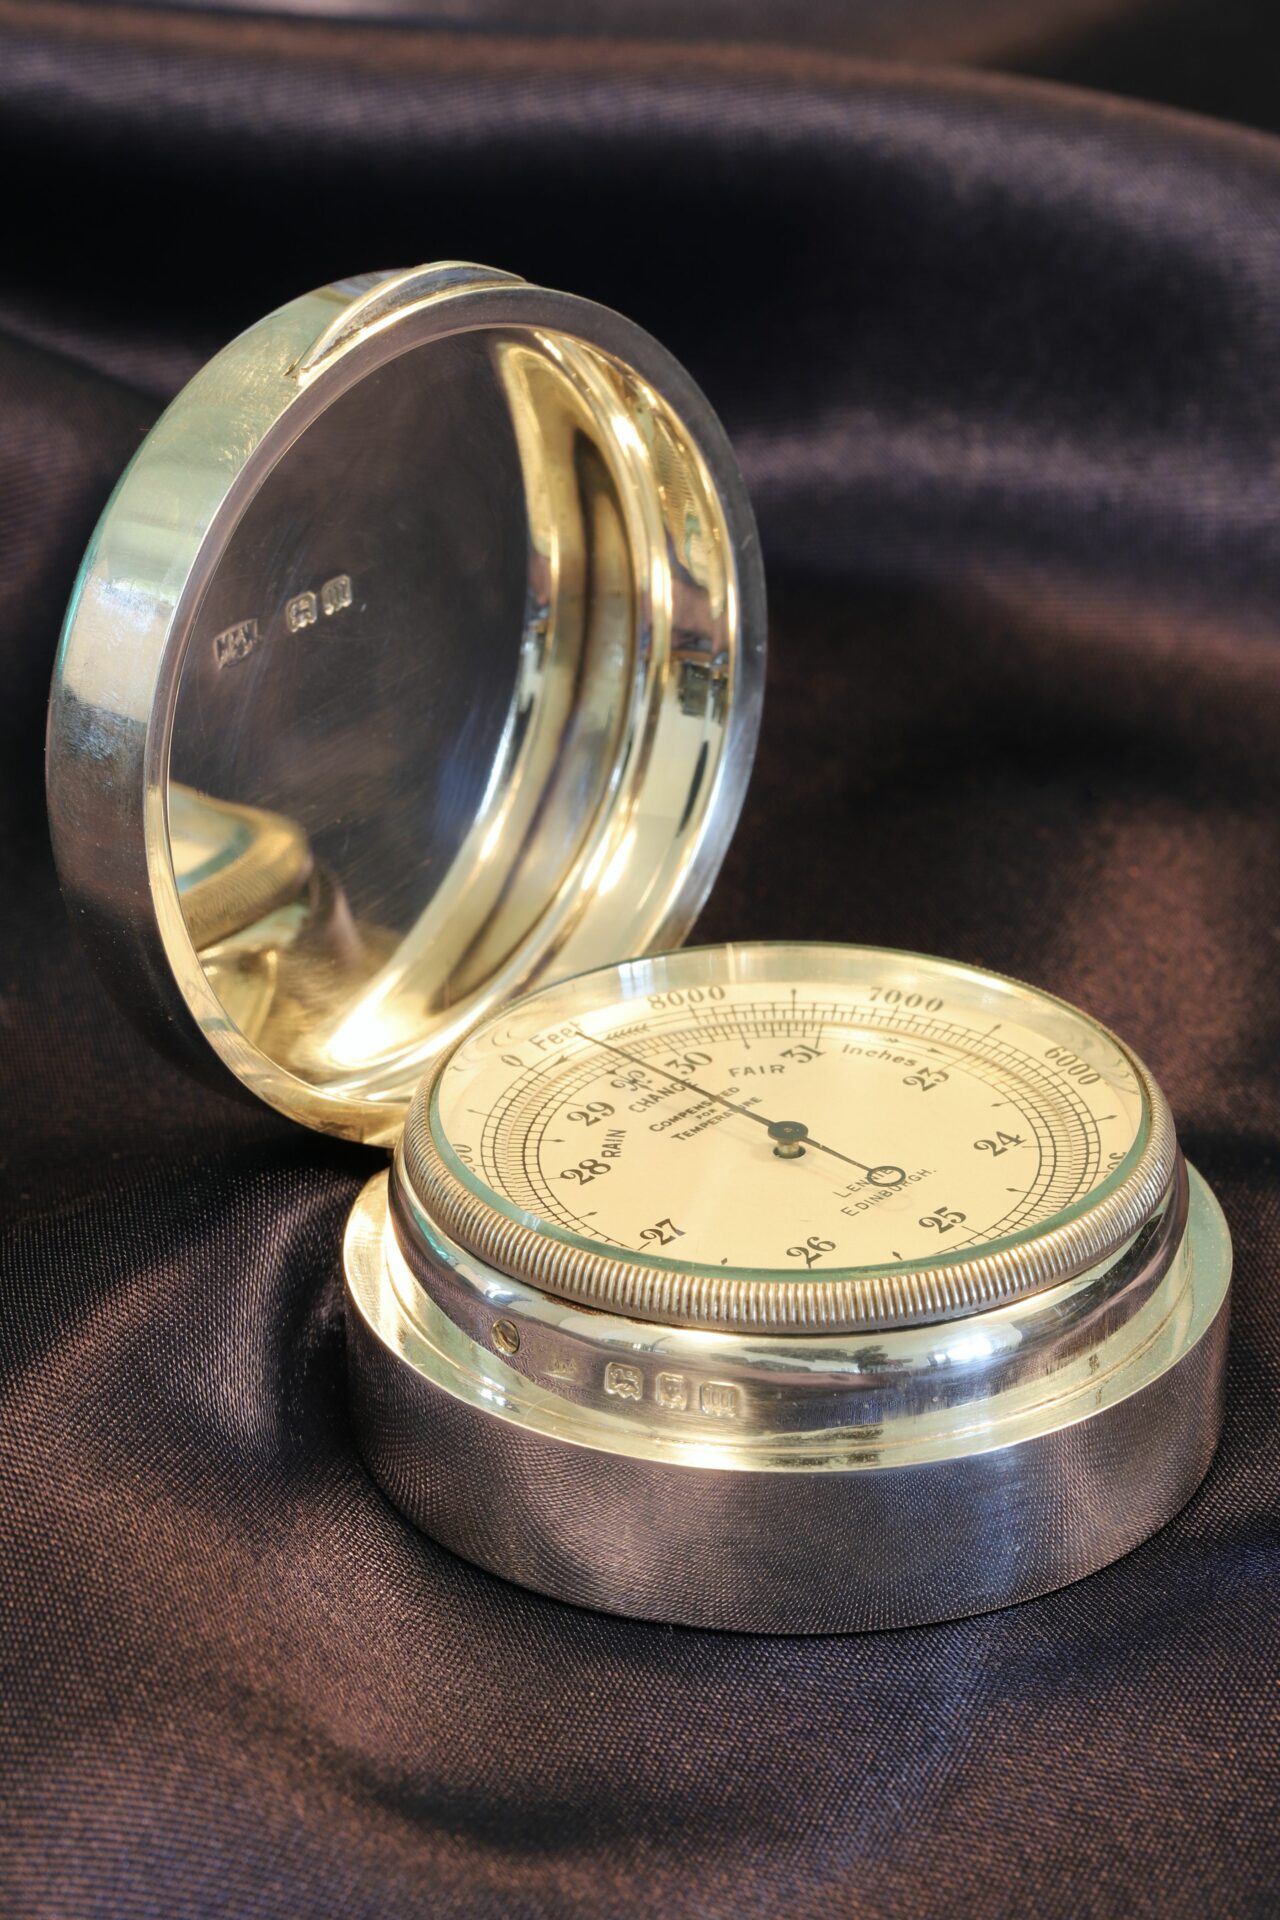 Negretti & Zambra Pocket Barometer in Silver Case by Mappin & Webb c1927 taken from front lefthand side